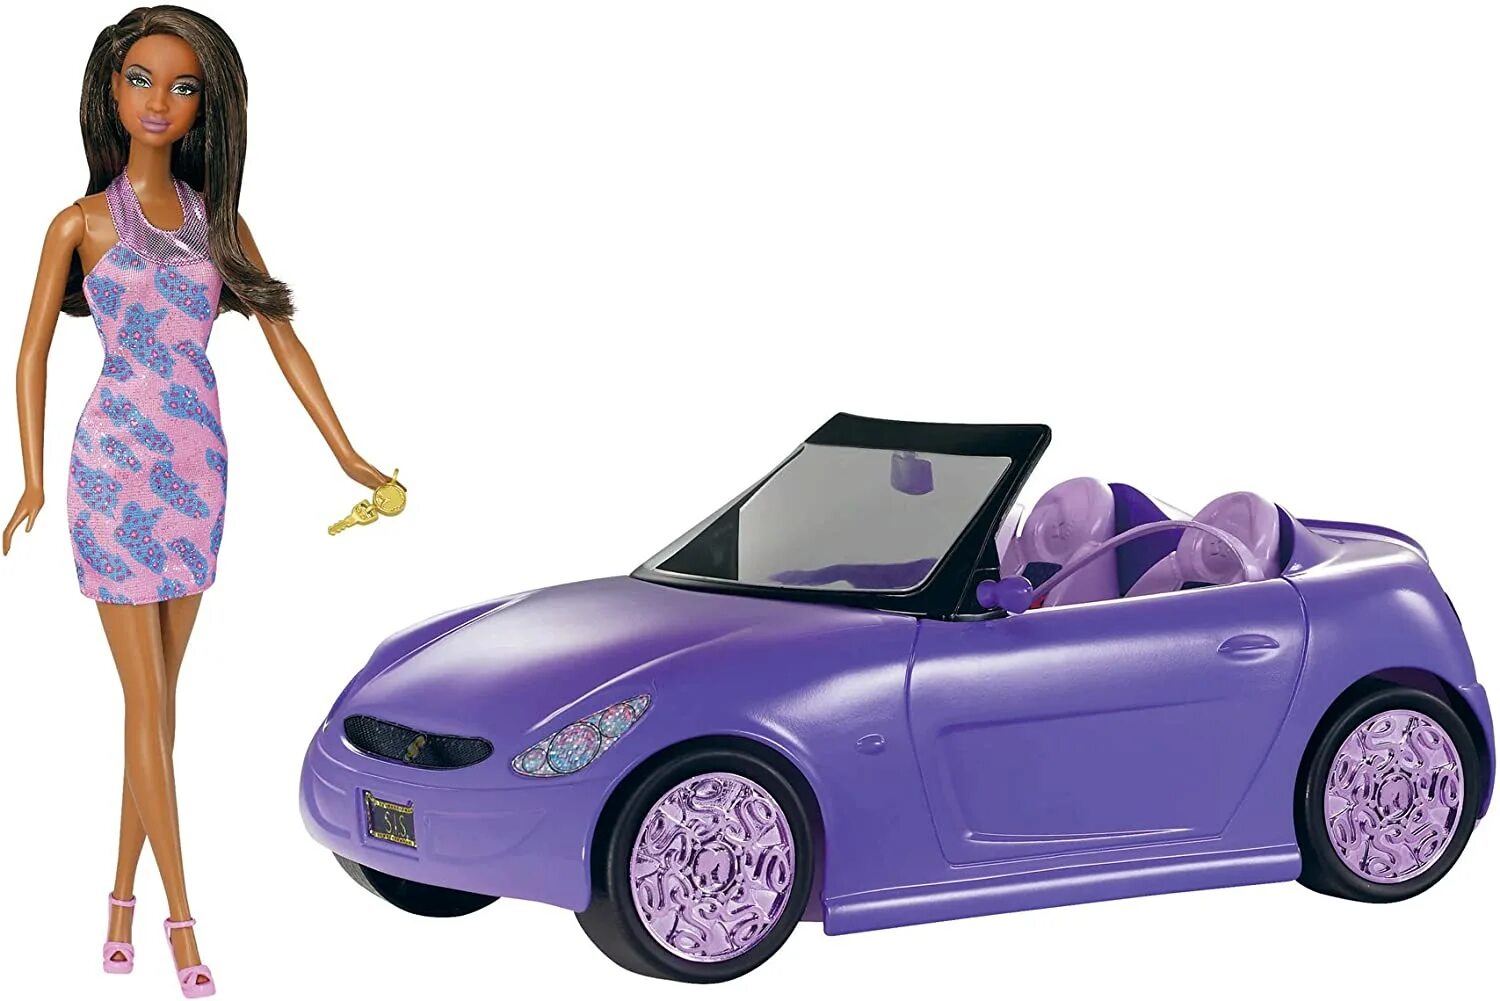 Кукла Барби с машиной. Игрушечная машина для Барби. Розовая машинка куклы Барби. Машина недорогая Барби.